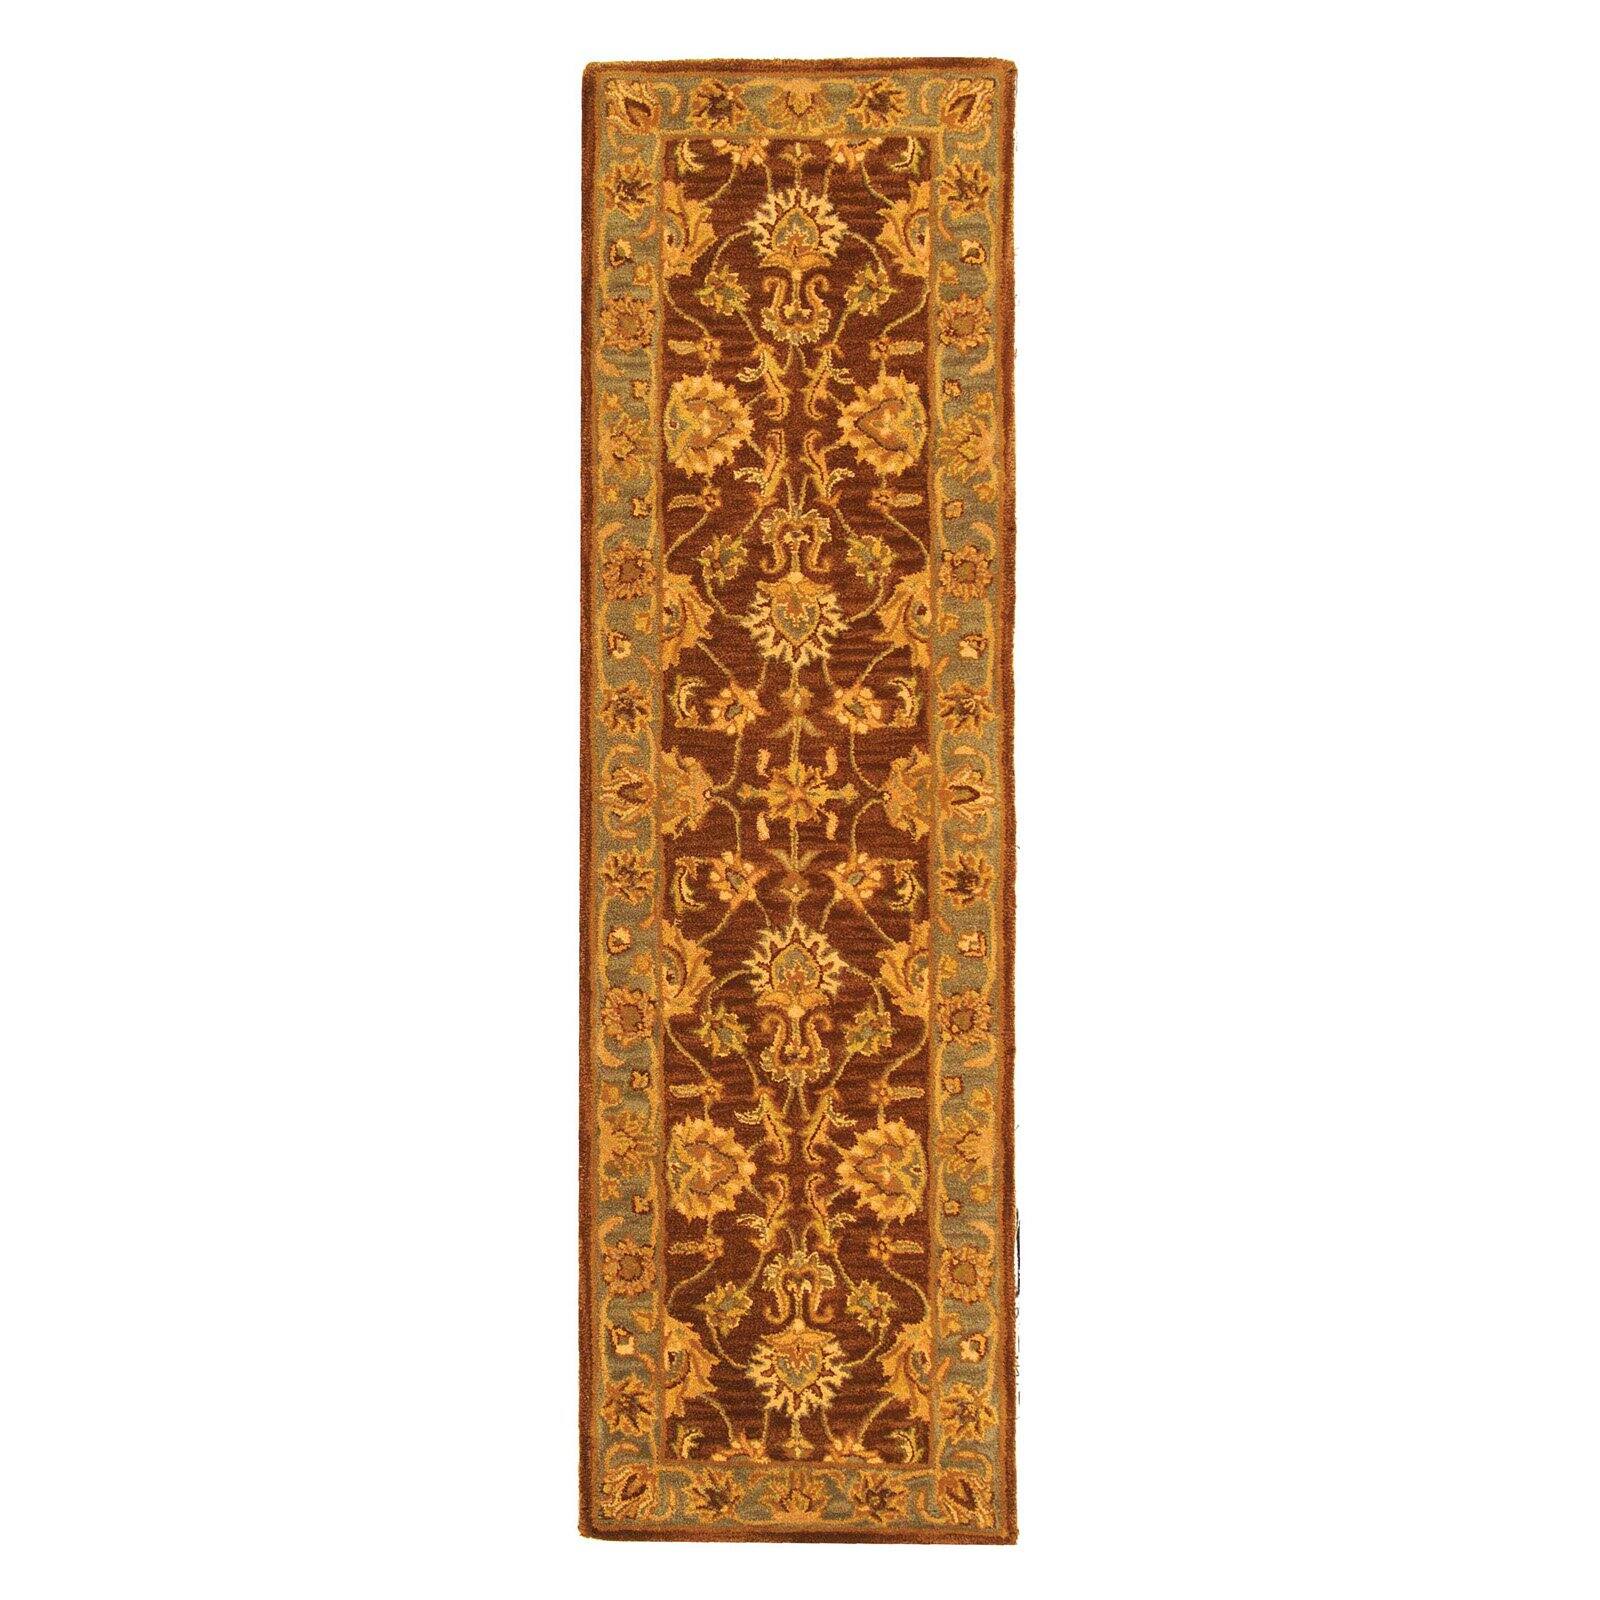 SAFAVIEH Heritage Regis Traditional Wool Area Rug, Brown/Blue, 6' x 9' - image 3 of 9